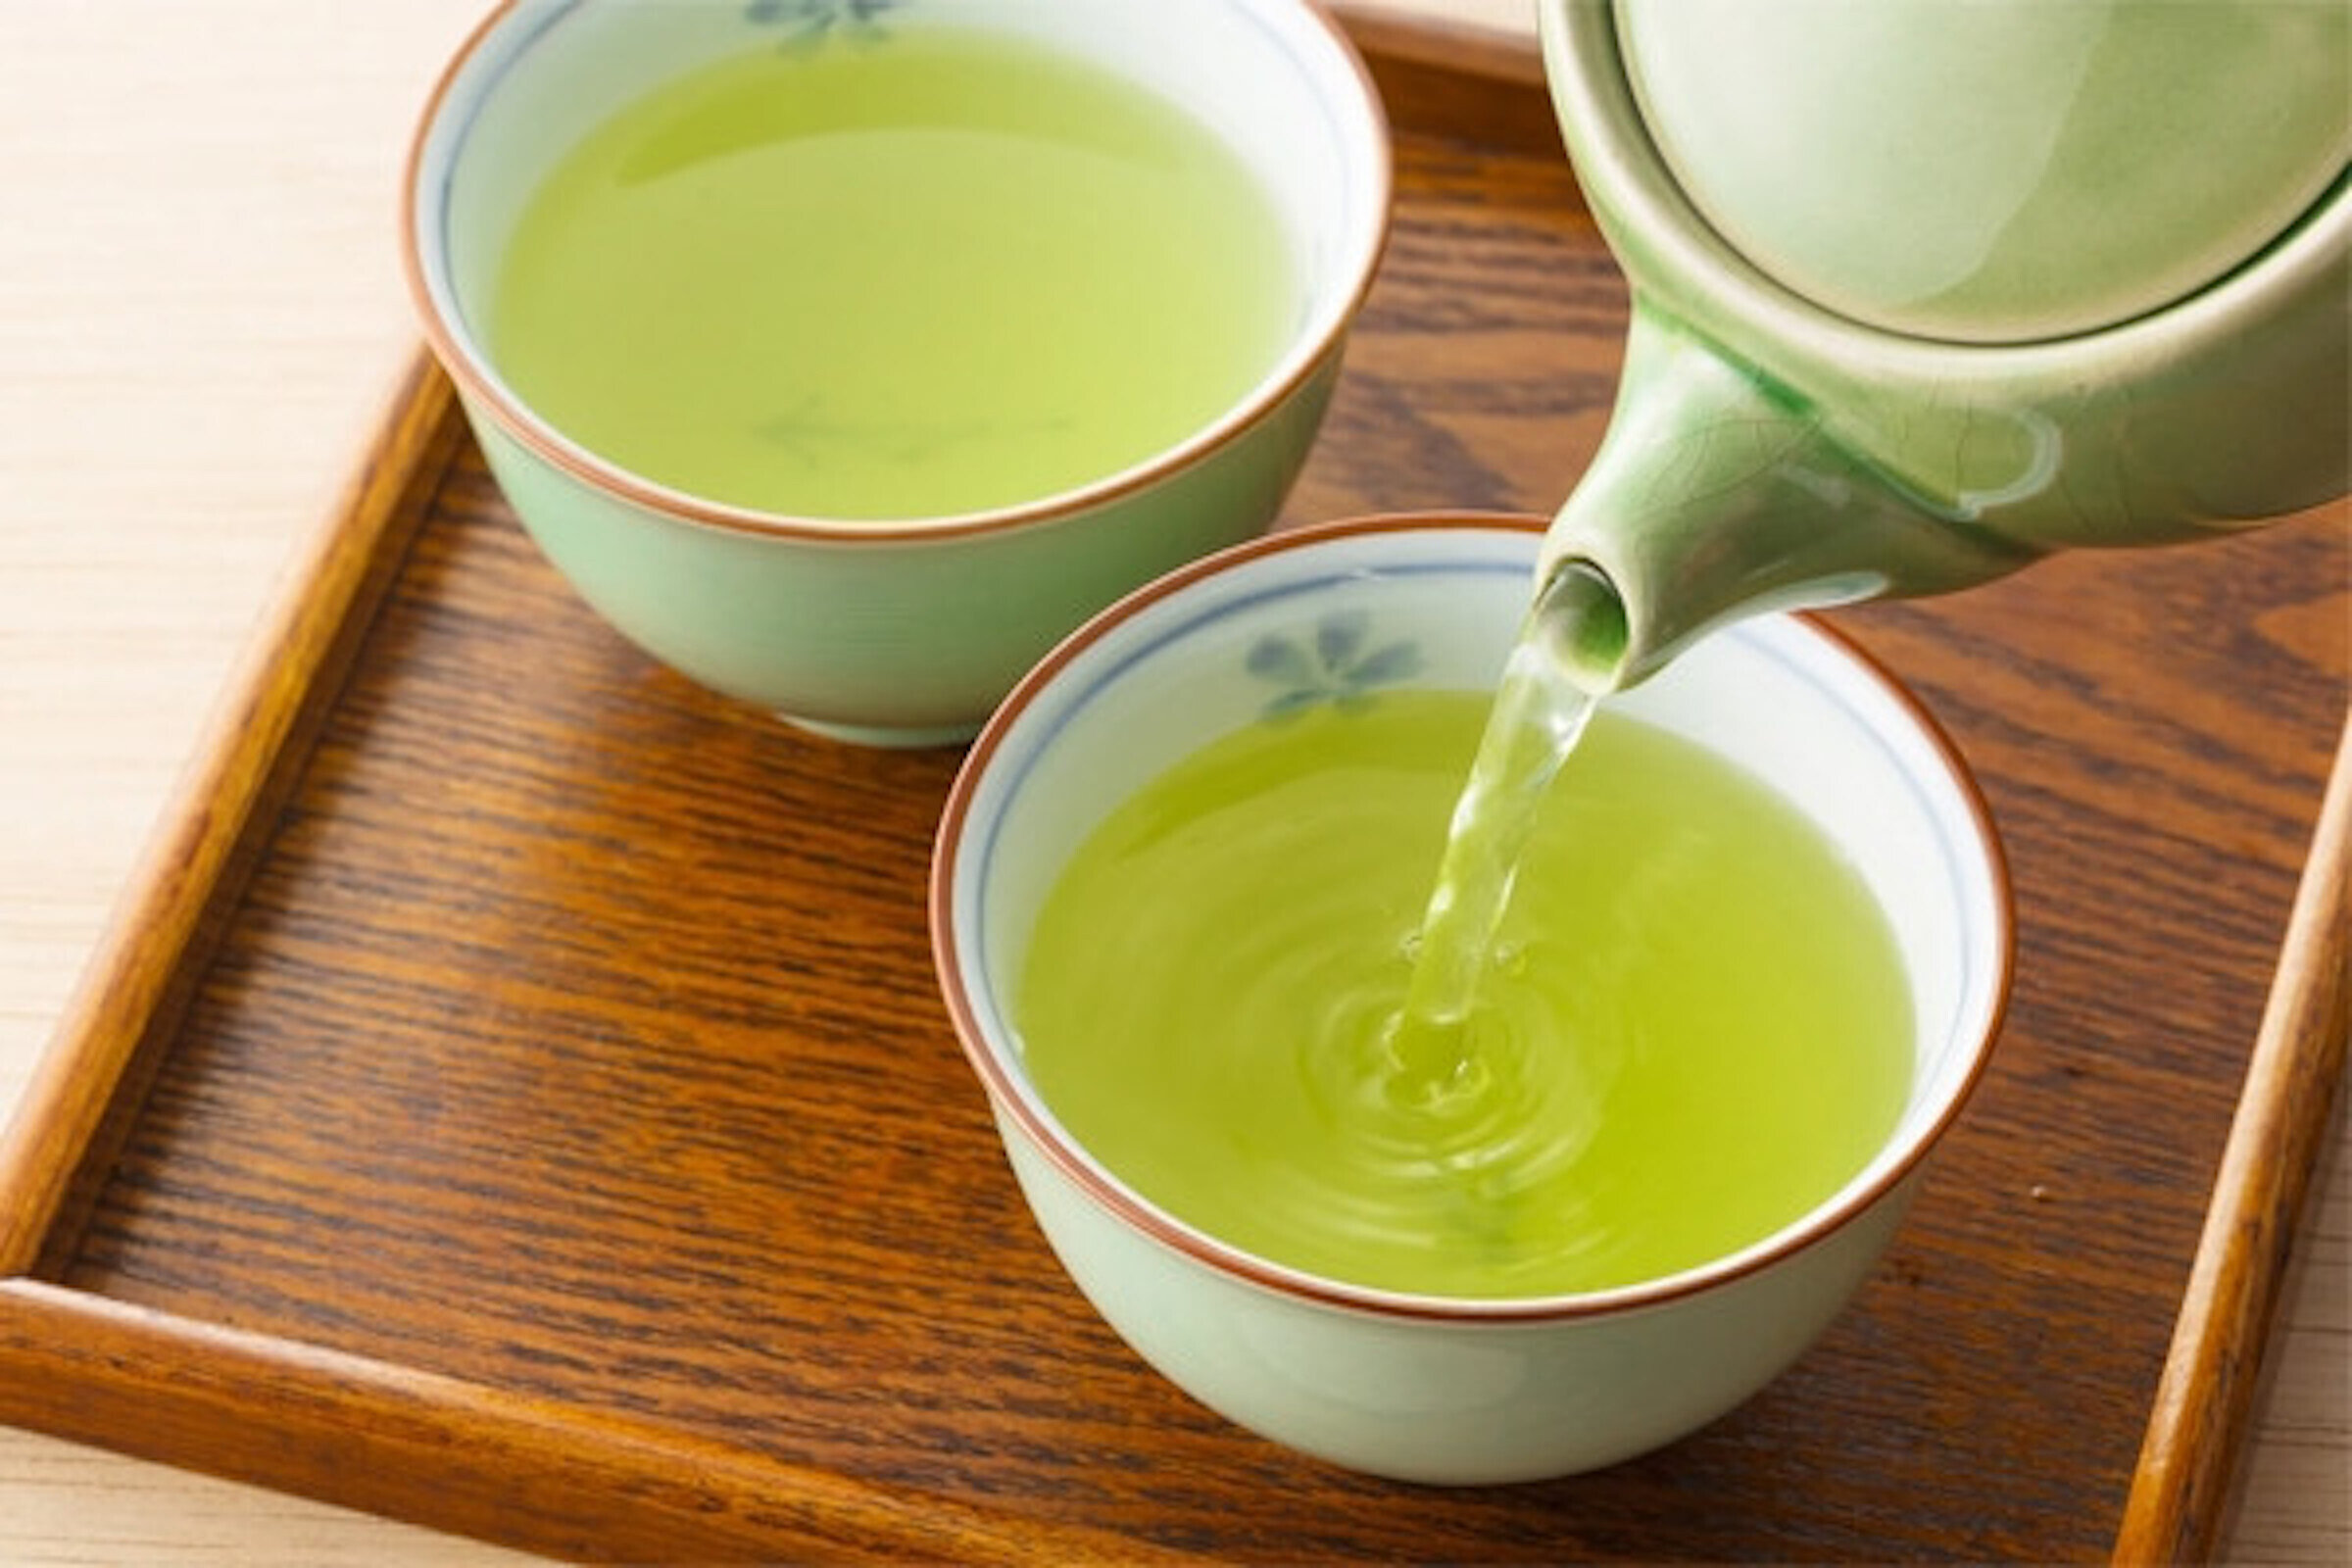 Uống trà xanh liên tục một tuần mỗi sáng giúp cơ thể tăng năng lượng, thúc đẩy trao đổi chất, thư giãn.